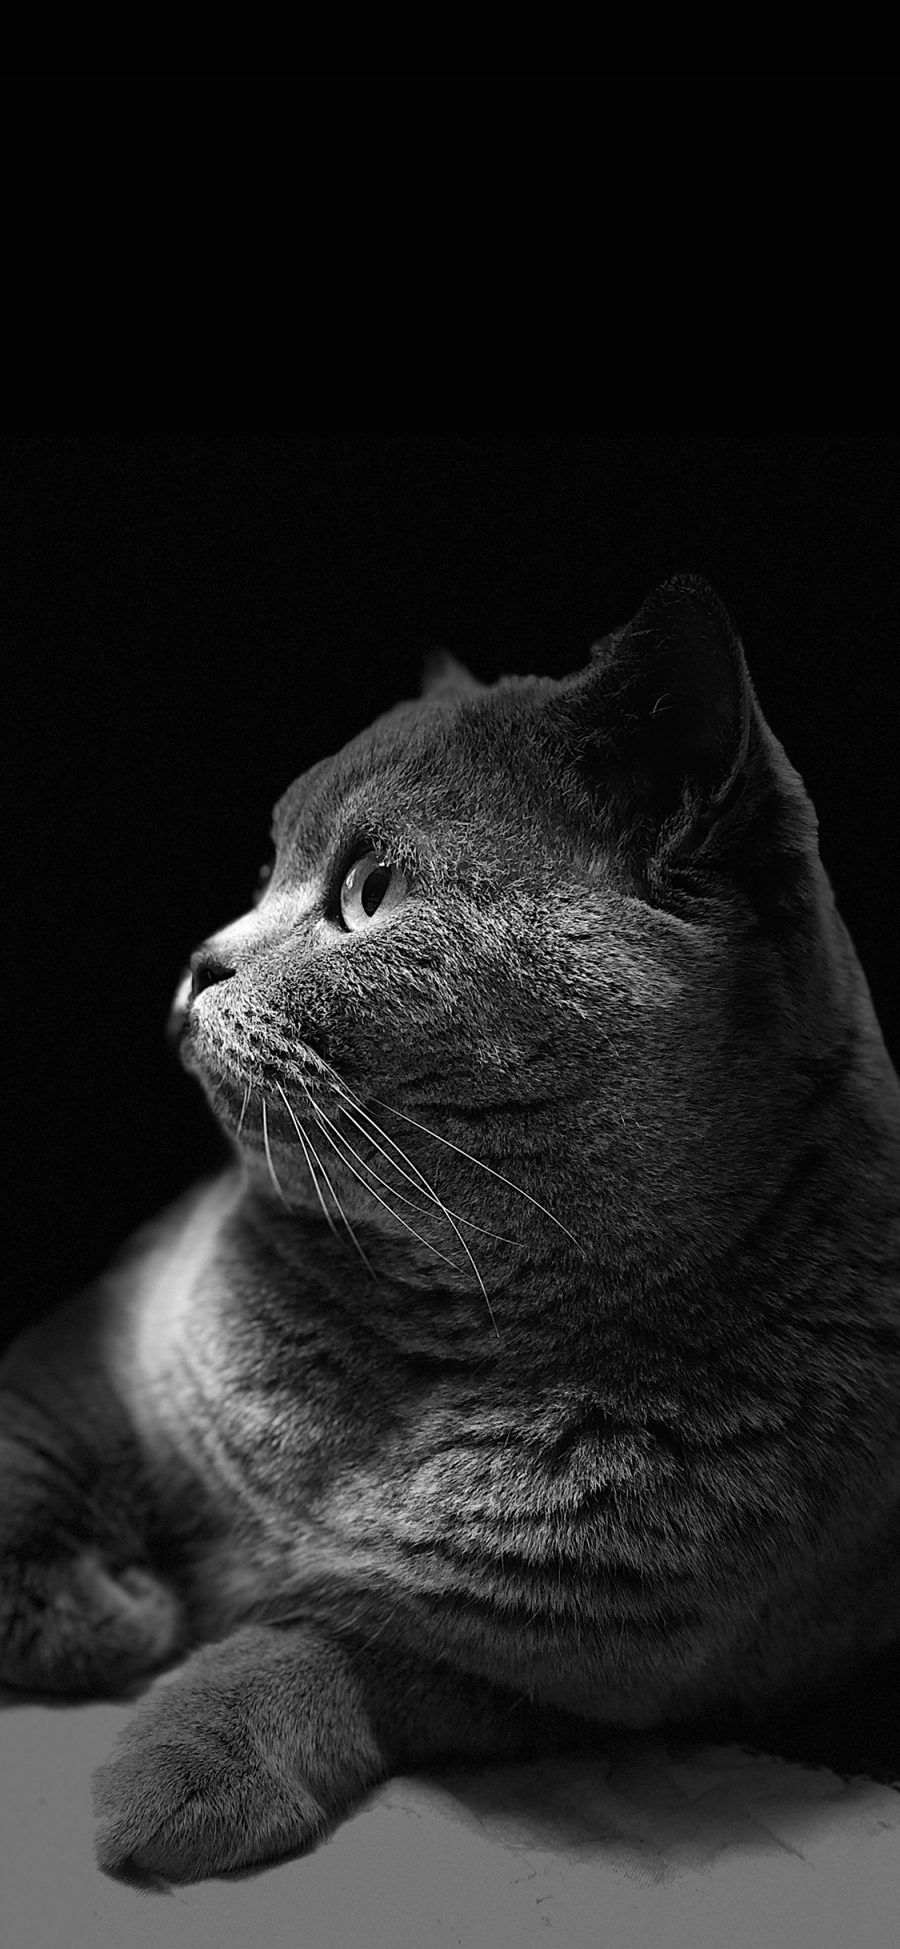 [2436×1125]猫咪 喵星人 黑猫 黑灰 宠物 可爱 萌 苹果手机壁纸图片